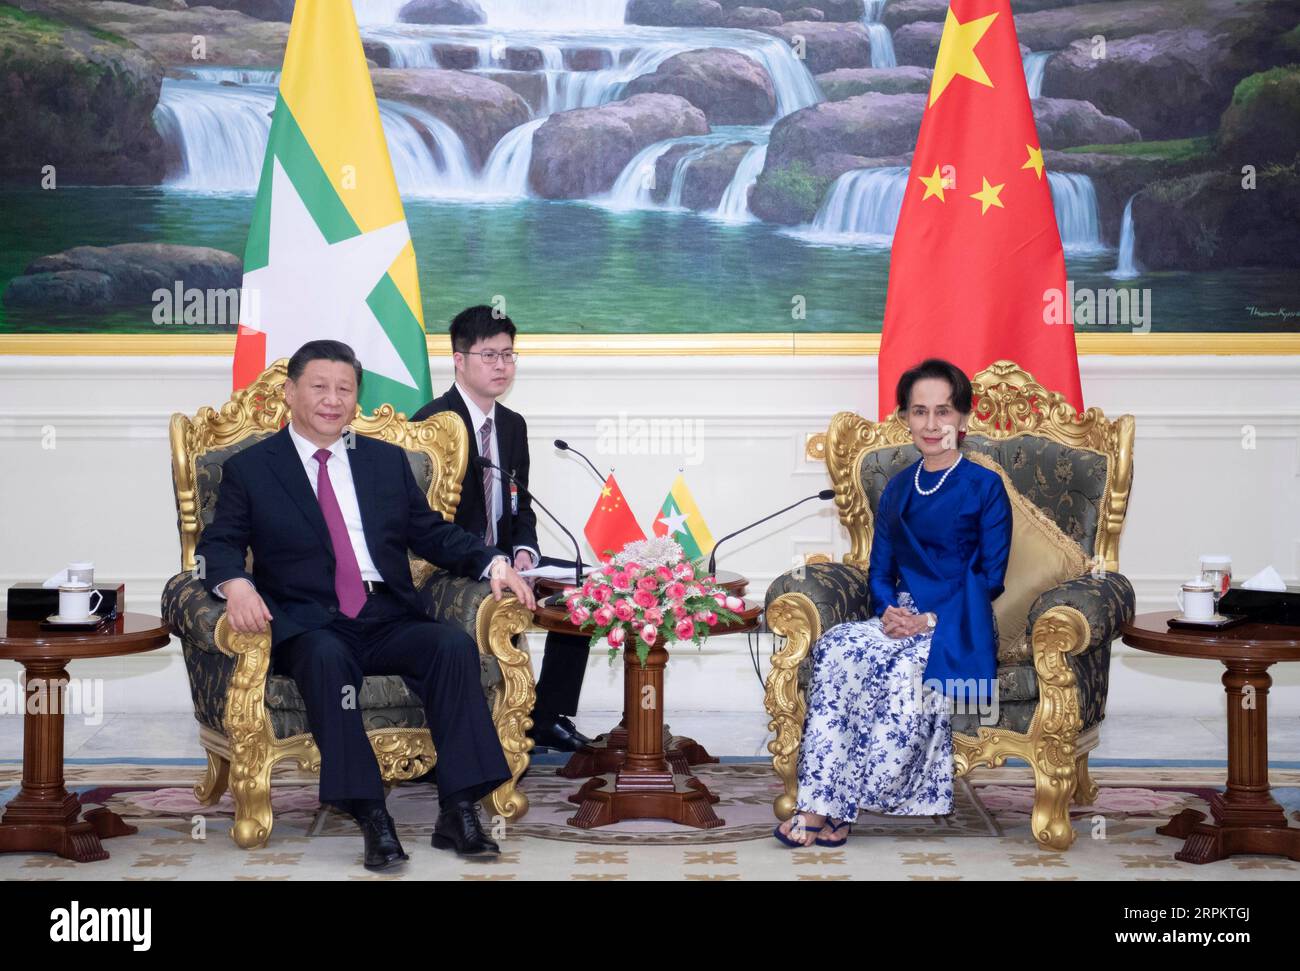 200117 -- NAY PYI TAW, le 17 janvier 2020 -- le président chinois Xi Jinping rencontre la conseillère d'État du Myanmar, Aung San Suu Kyi, après avoir assisté à une grande cérémonie de bienvenue organisée par le président du Myanmar U Win Myint au palais présidentiel de Nay Pyi Taw, Myanmar, le 17 janvier 2020. Aung San Suu Kyi est venue au palais présidentiel pour adresser ses chaleureuses salutations à Xi. MYANMAR-NAY PYI TAW-CHINA-XI JINPING-STATE COUNSELLOR-MEETING XIEXHUANCHI PUBLICATIONXNOTXINXCHN Banque D'Images